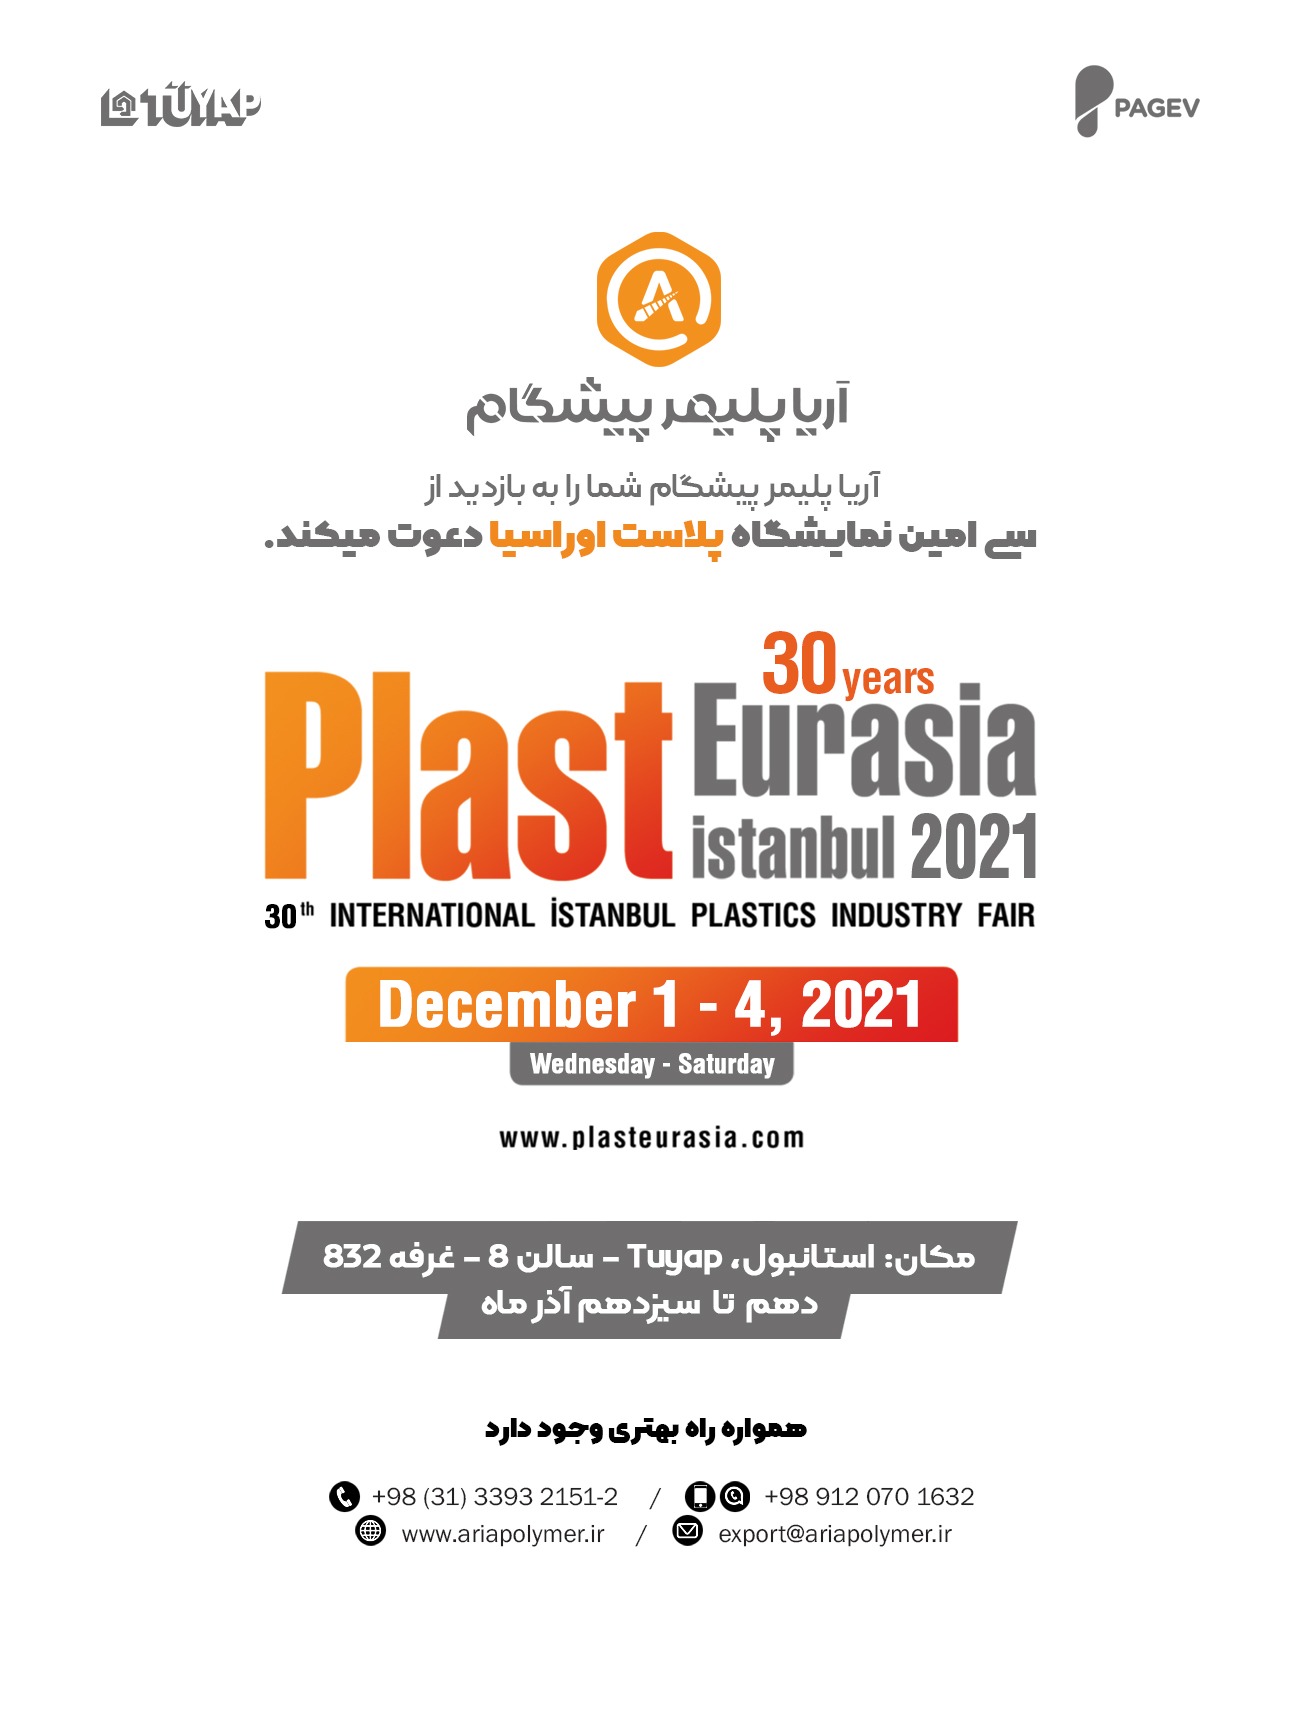 نمایشگاه پلاستیک و صنایع وابسته اوراسیا / پلاست اوراسیا